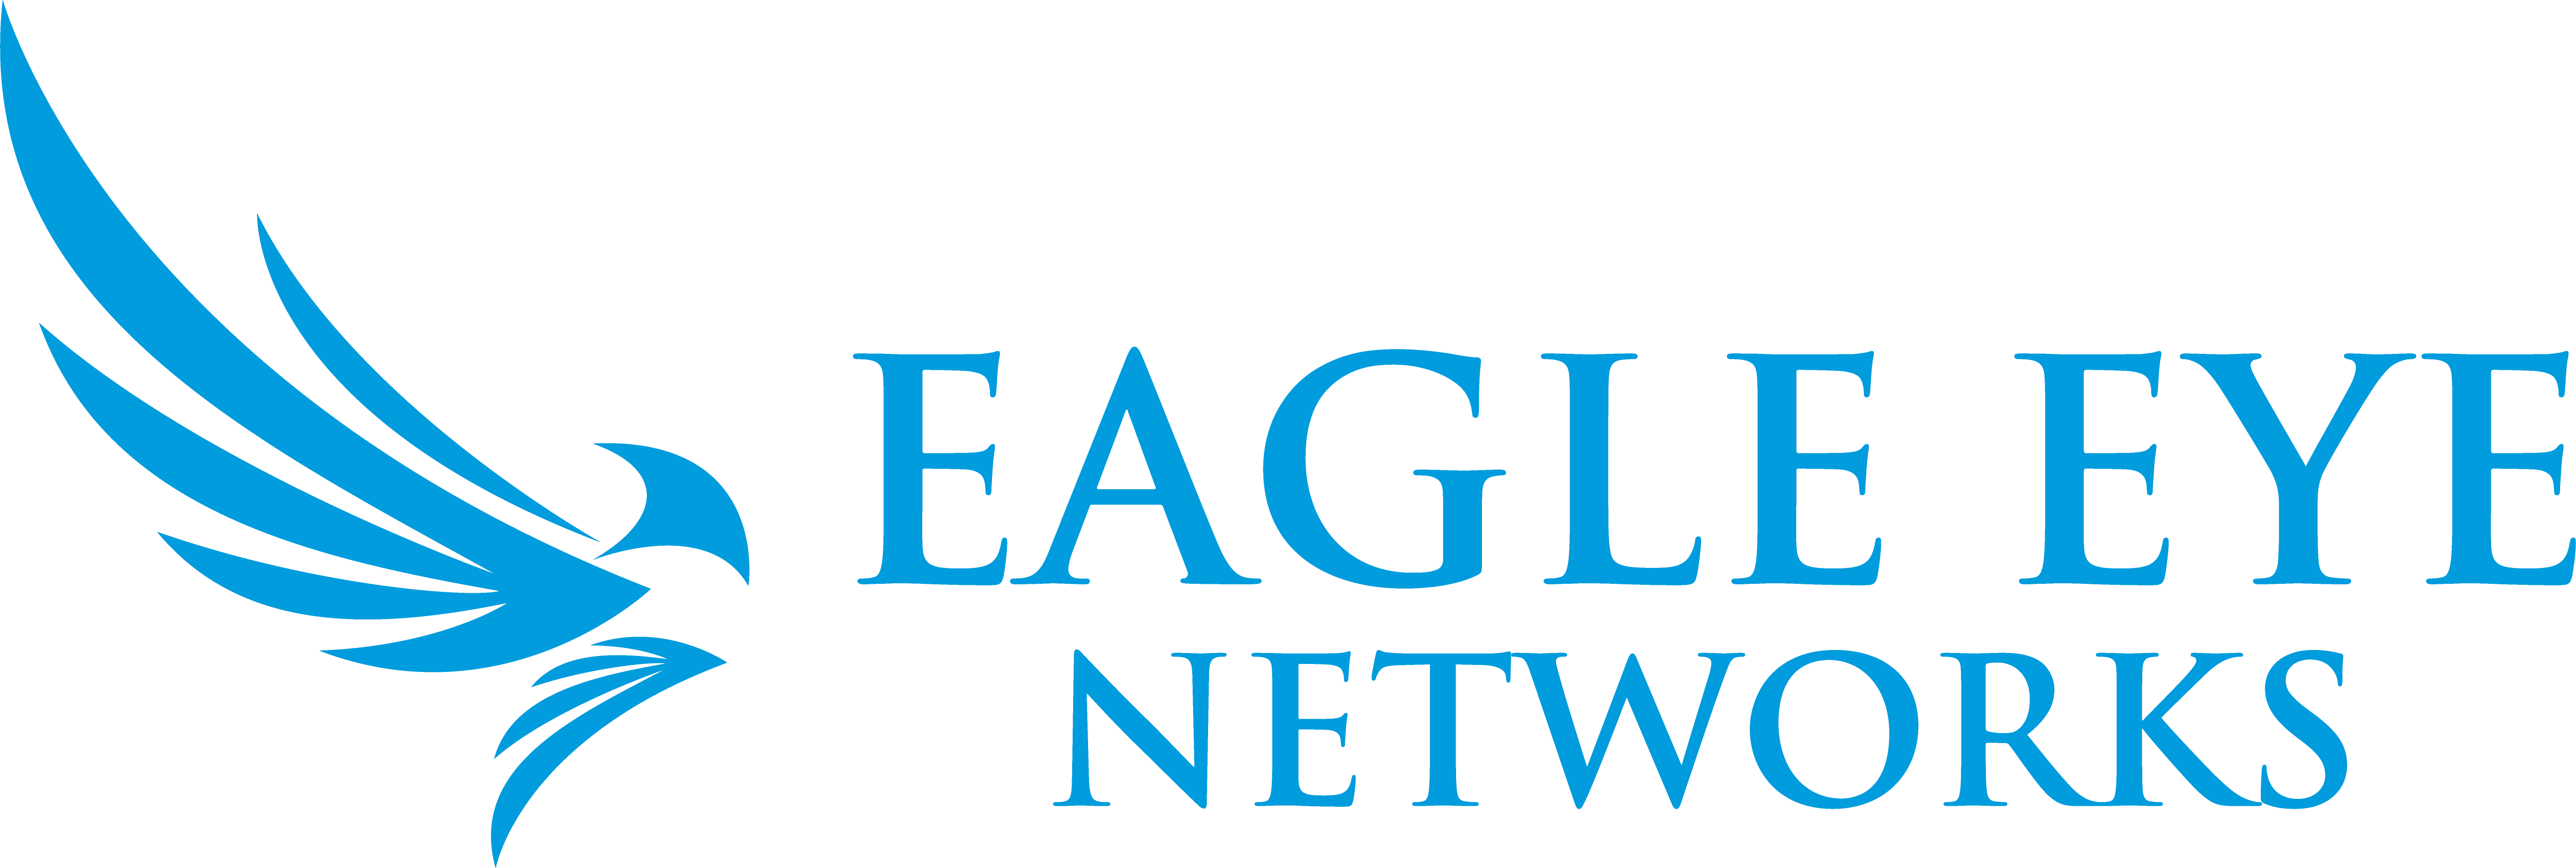 Eagle Eye Networks R